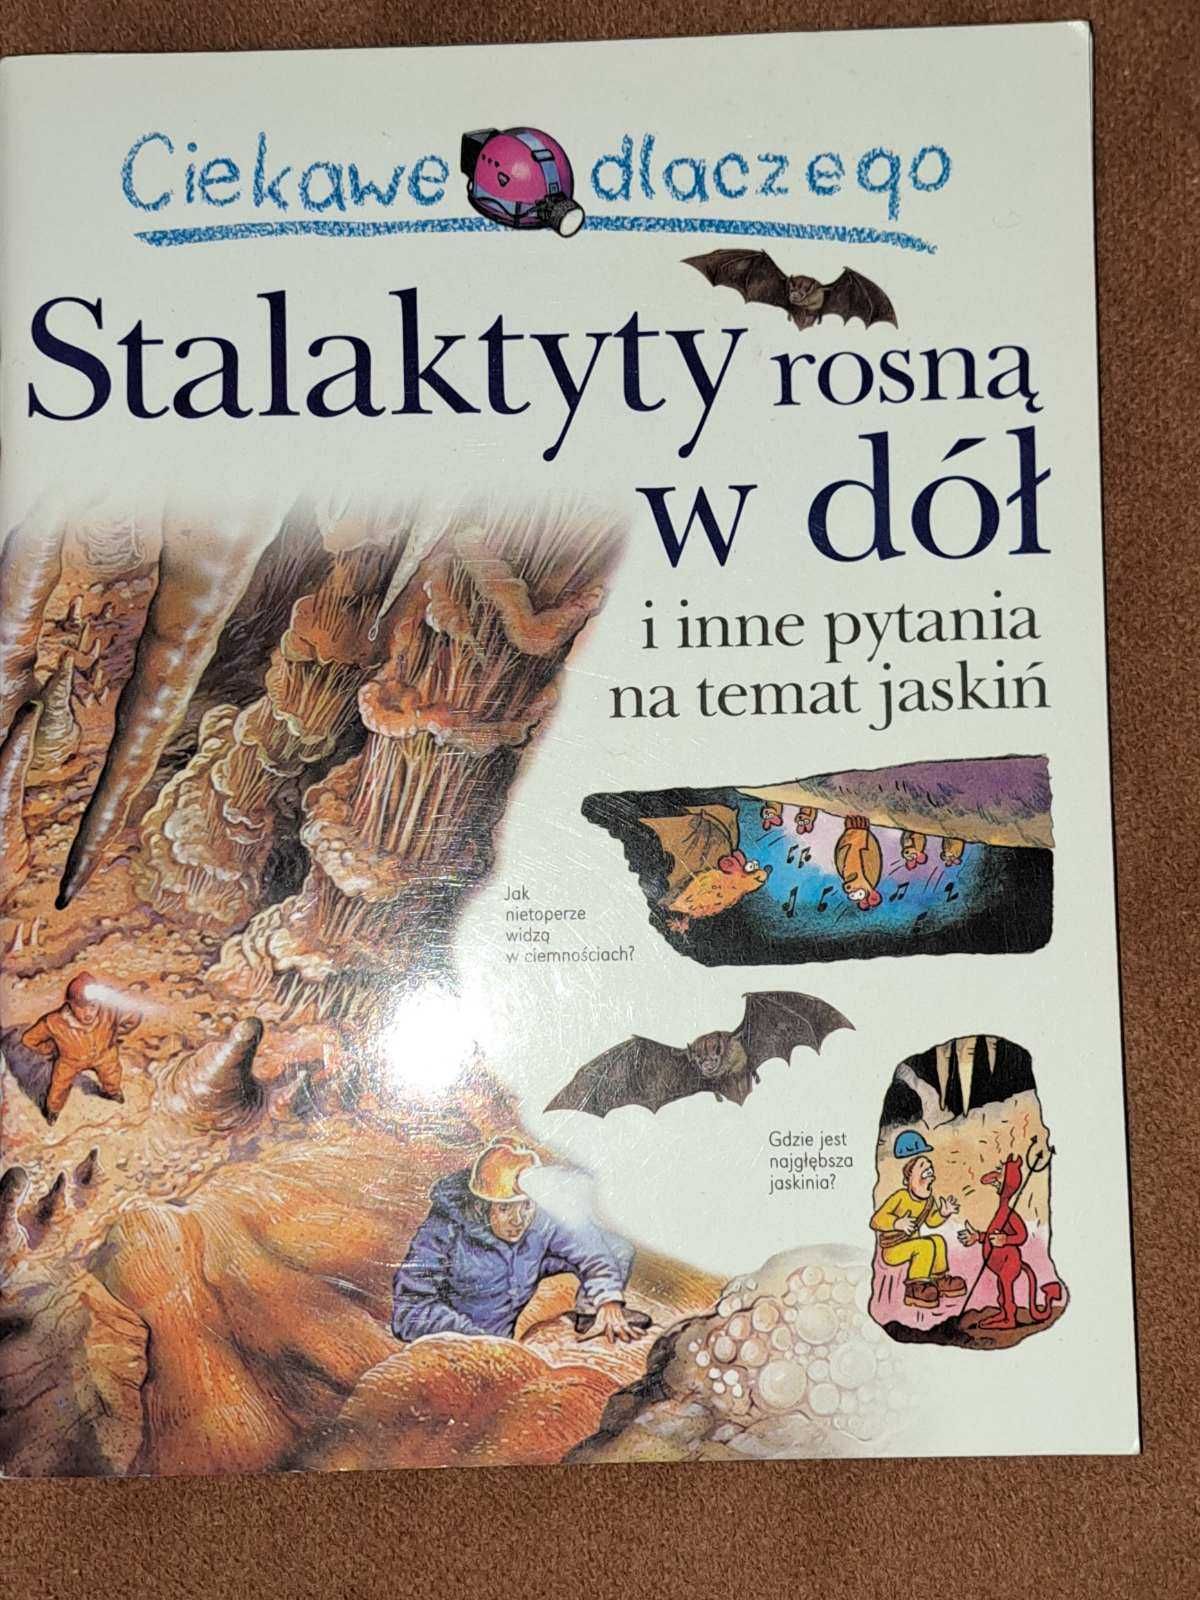 Серия книг "Интересно, почему" на польском языке часть 2.